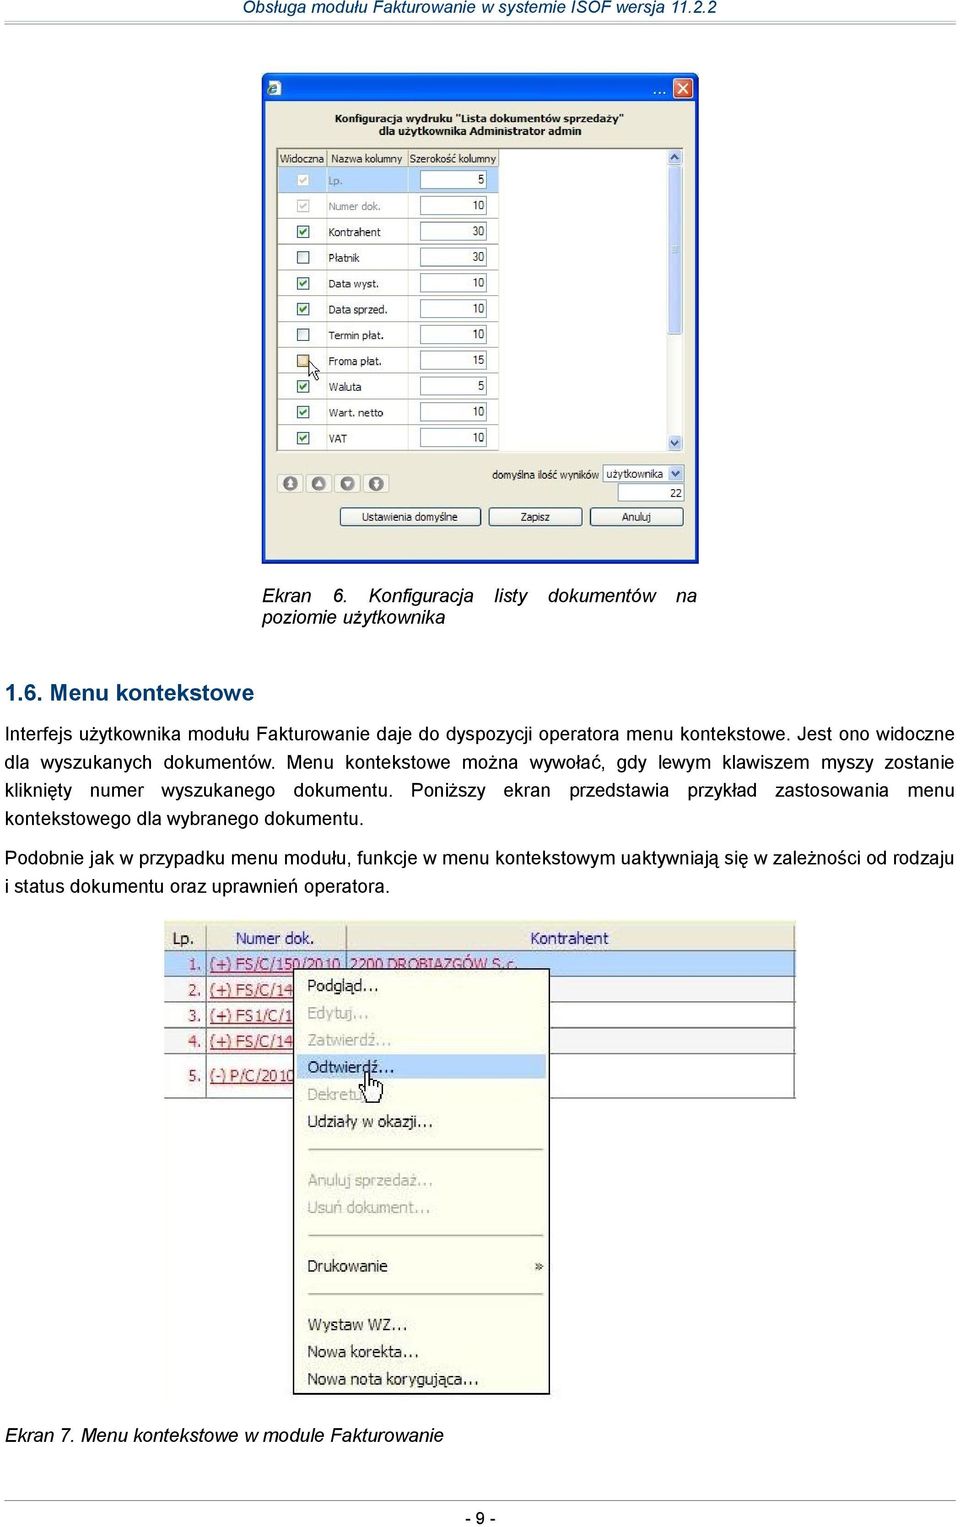 Poniższy ekran przedstawia przykład zastosowania menu kontekstowego dla wybranego dokumentu.